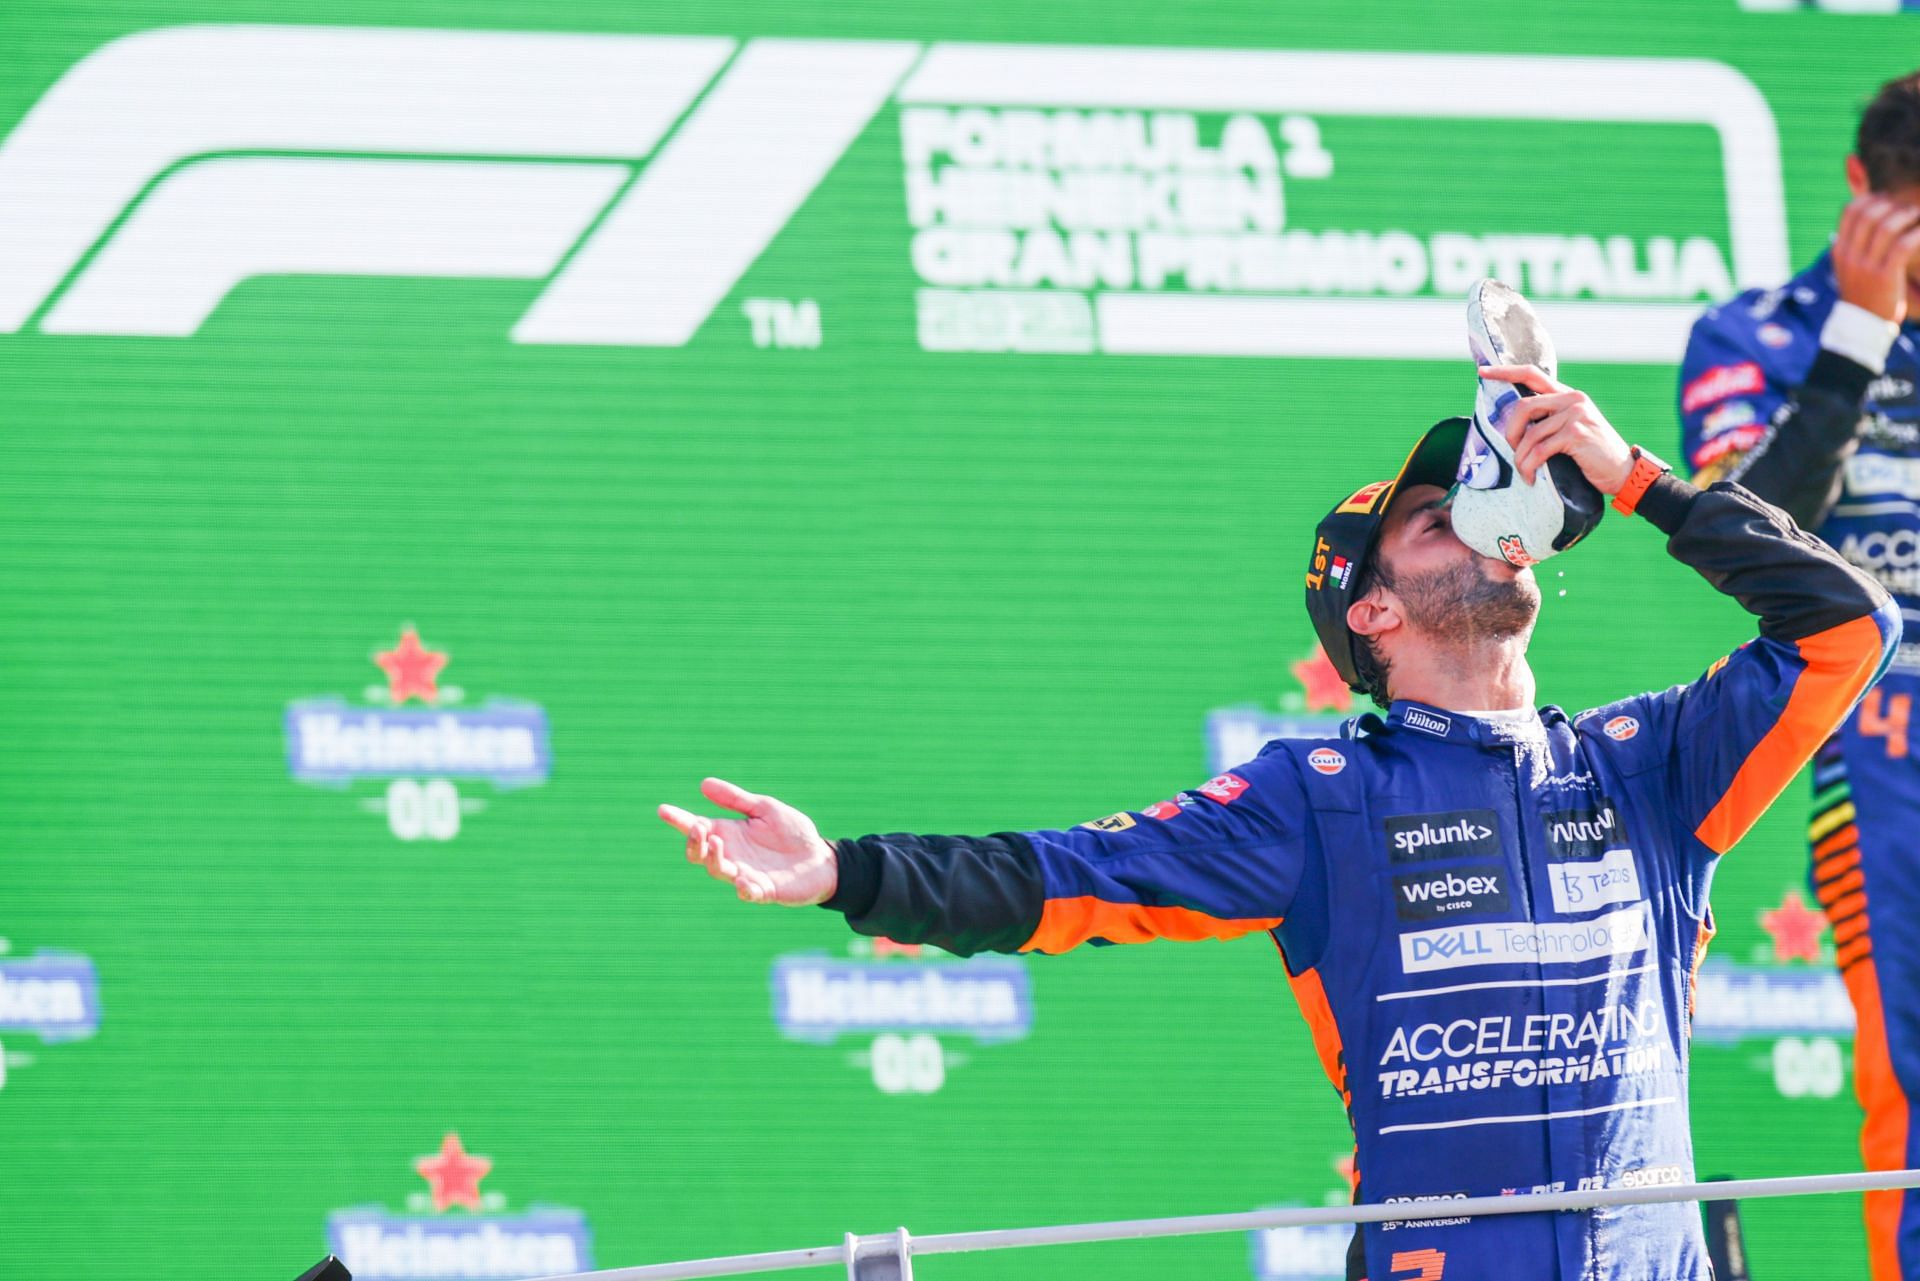 F1 Grand Prix of Italy - Ricciardo Wins